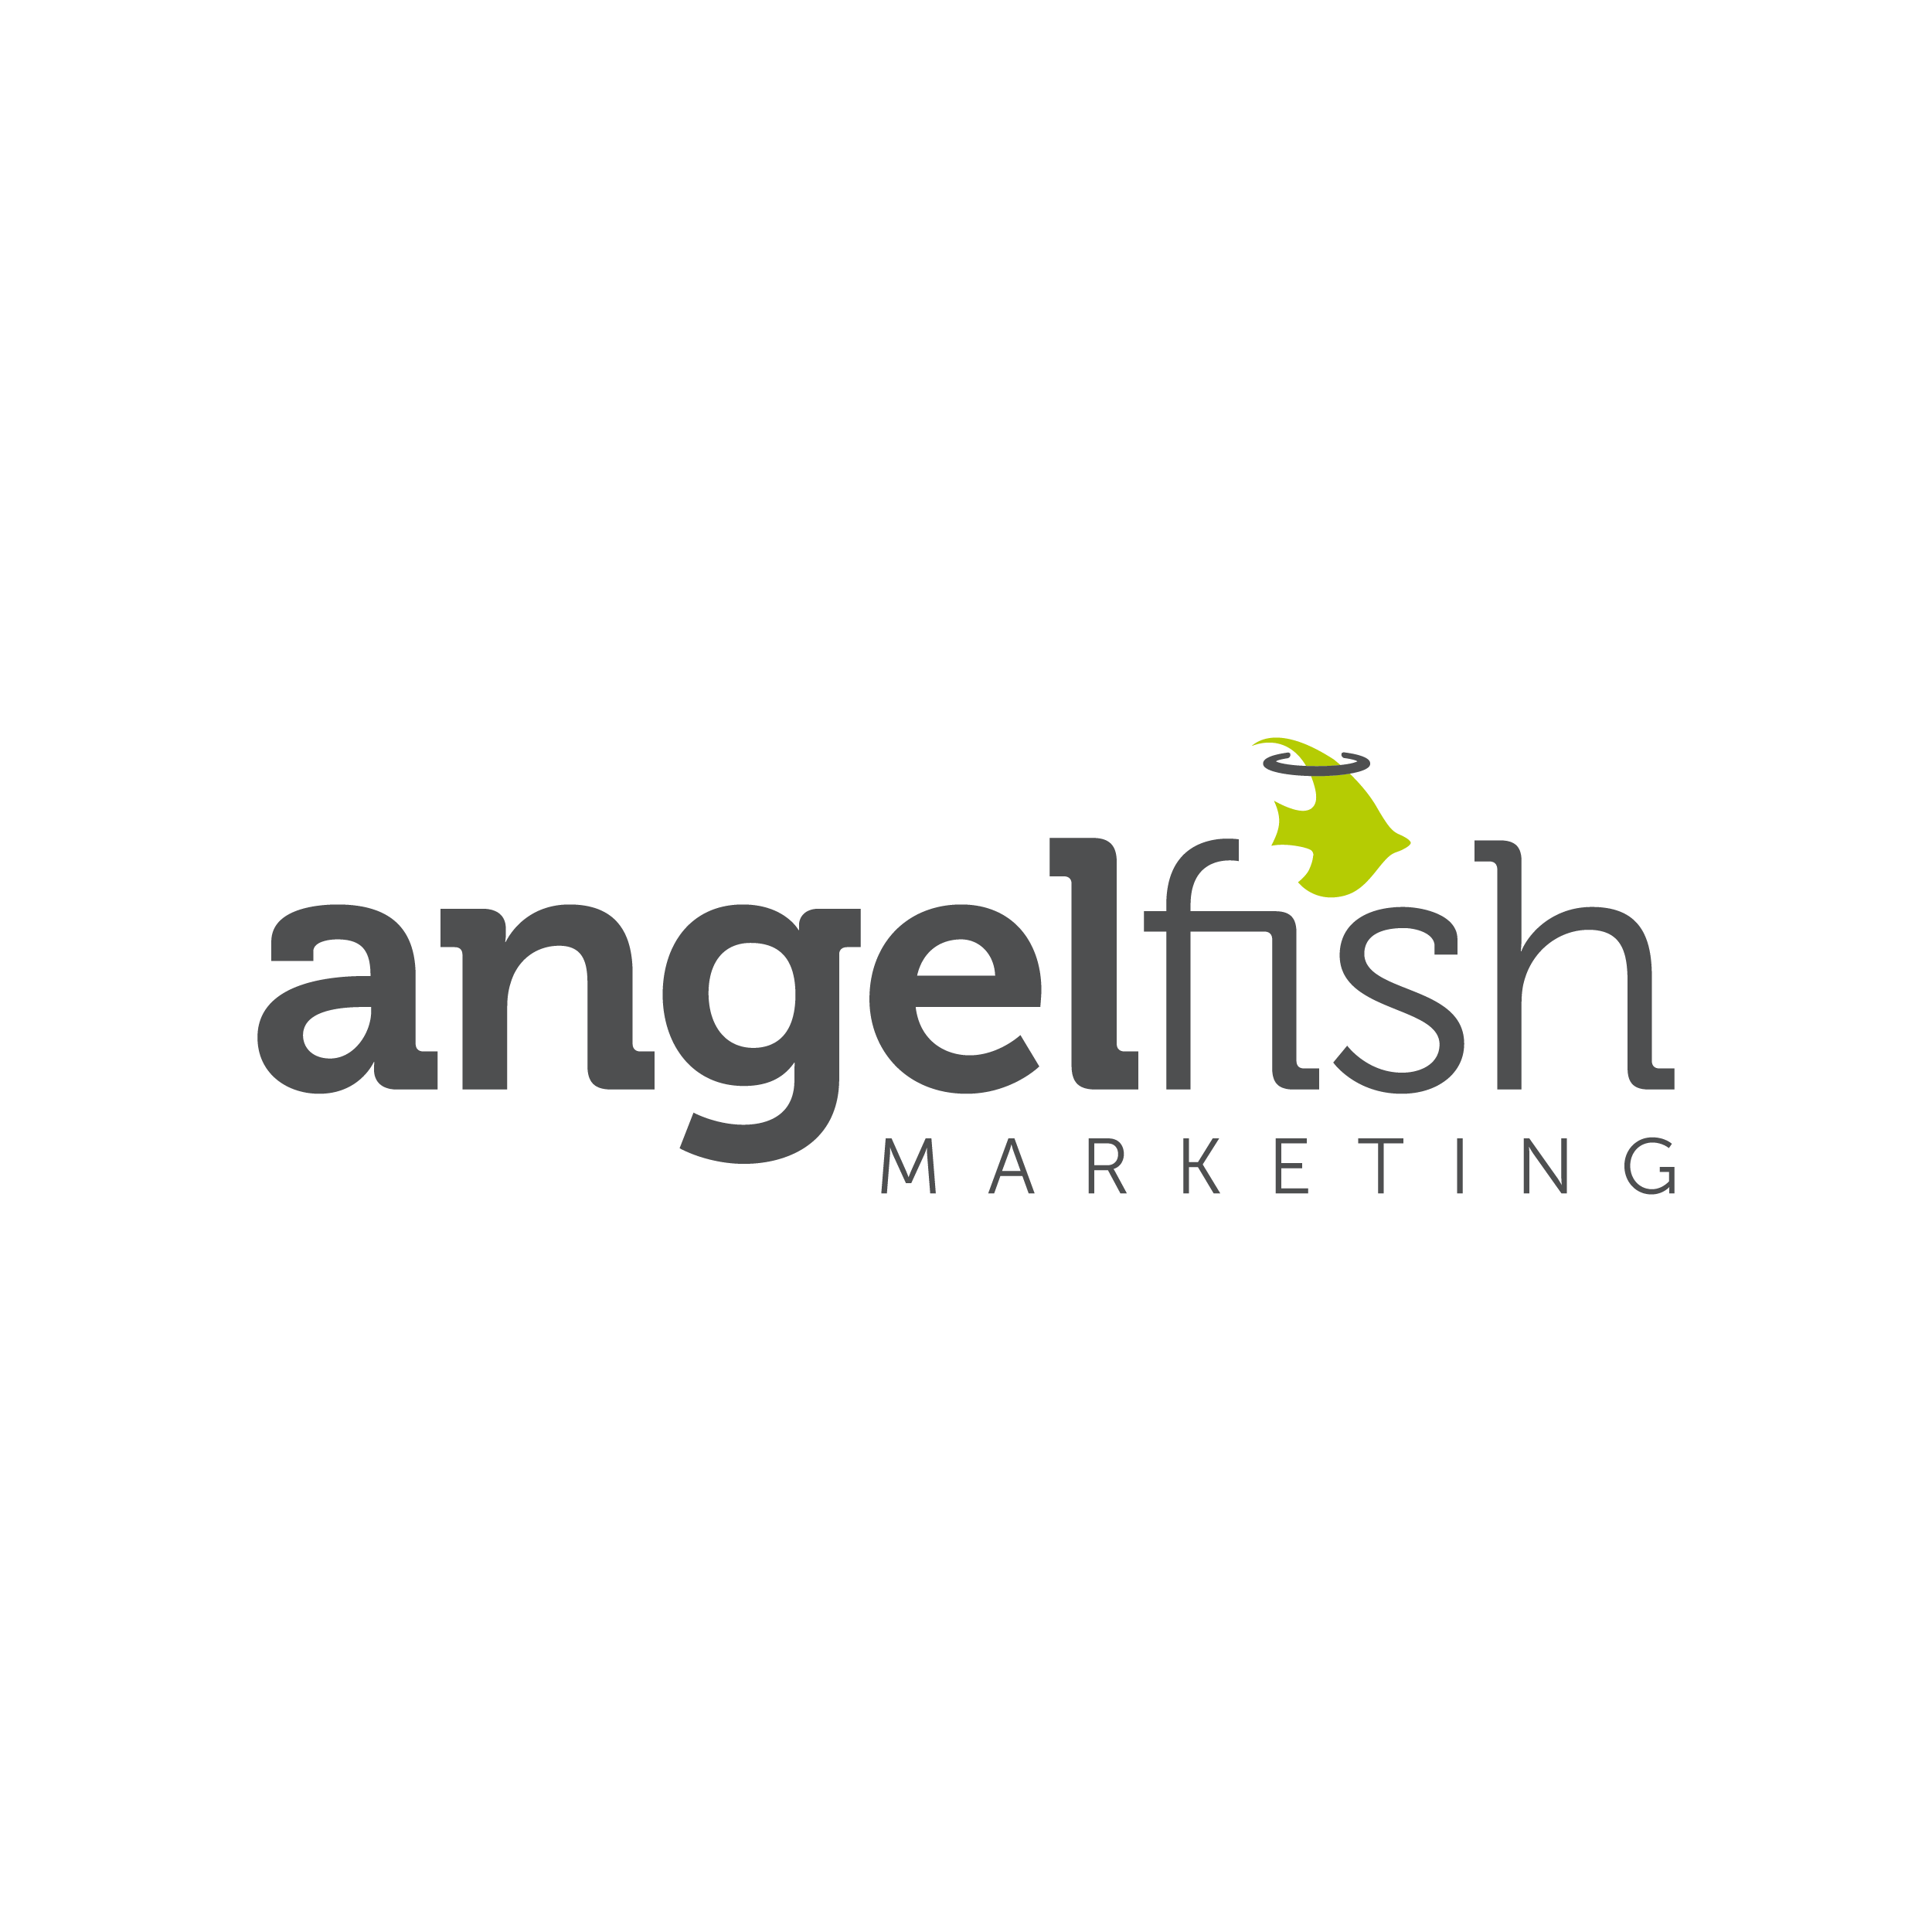 Angelfish Marketing